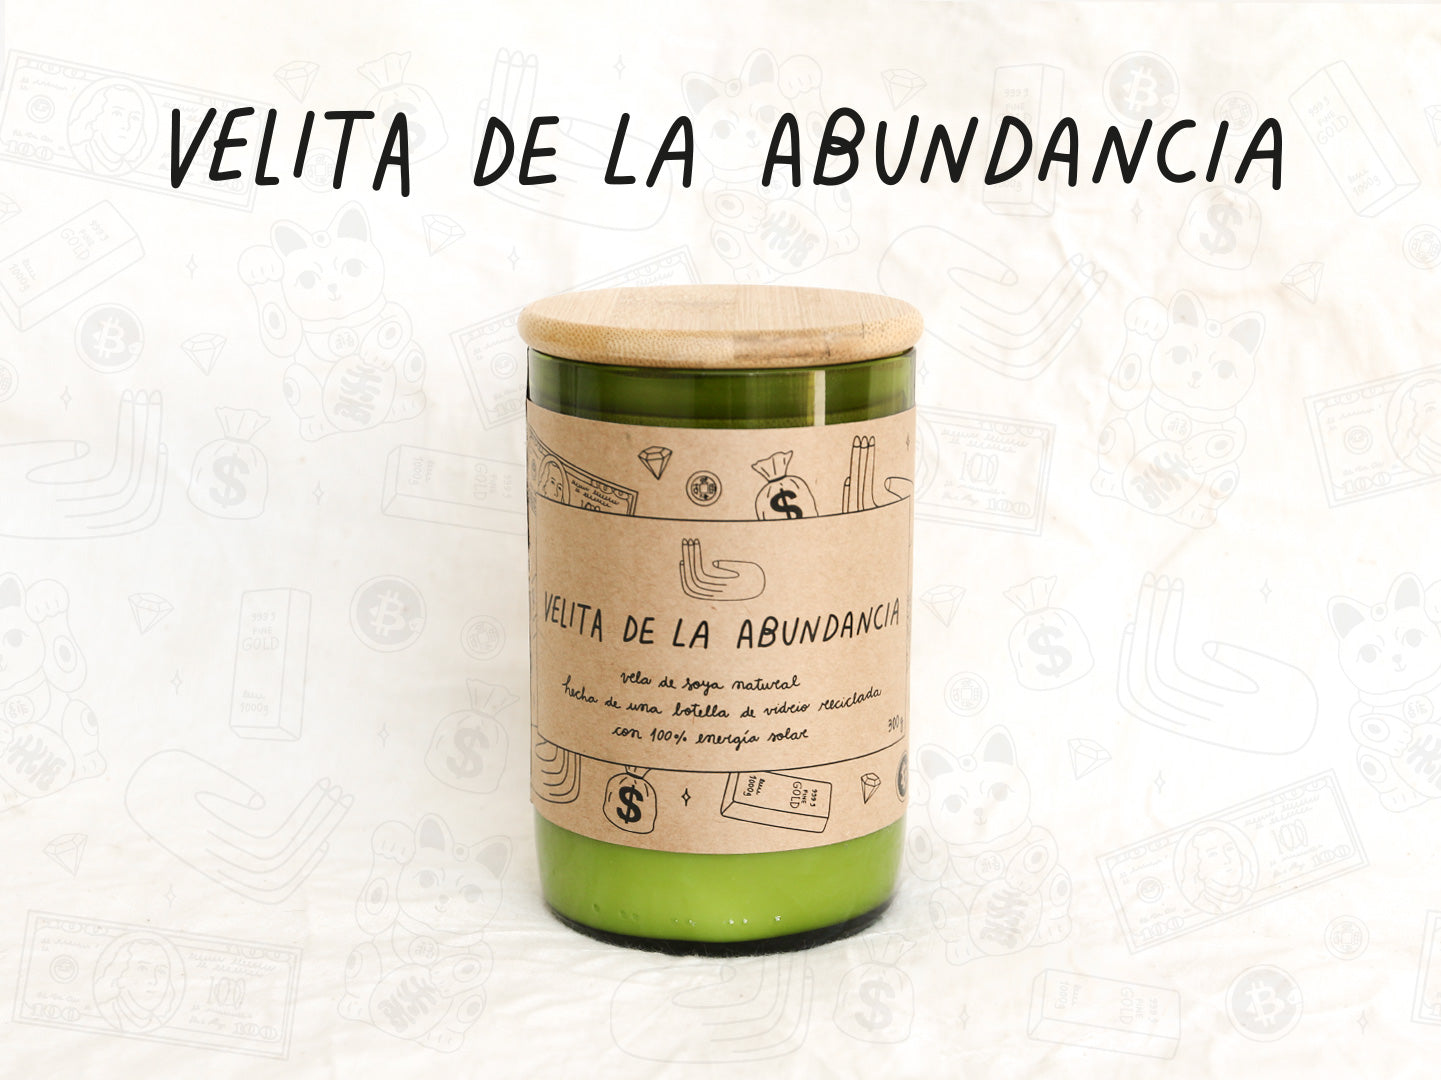 Velita de la Abundancia - Aroma Vainilla - Verde